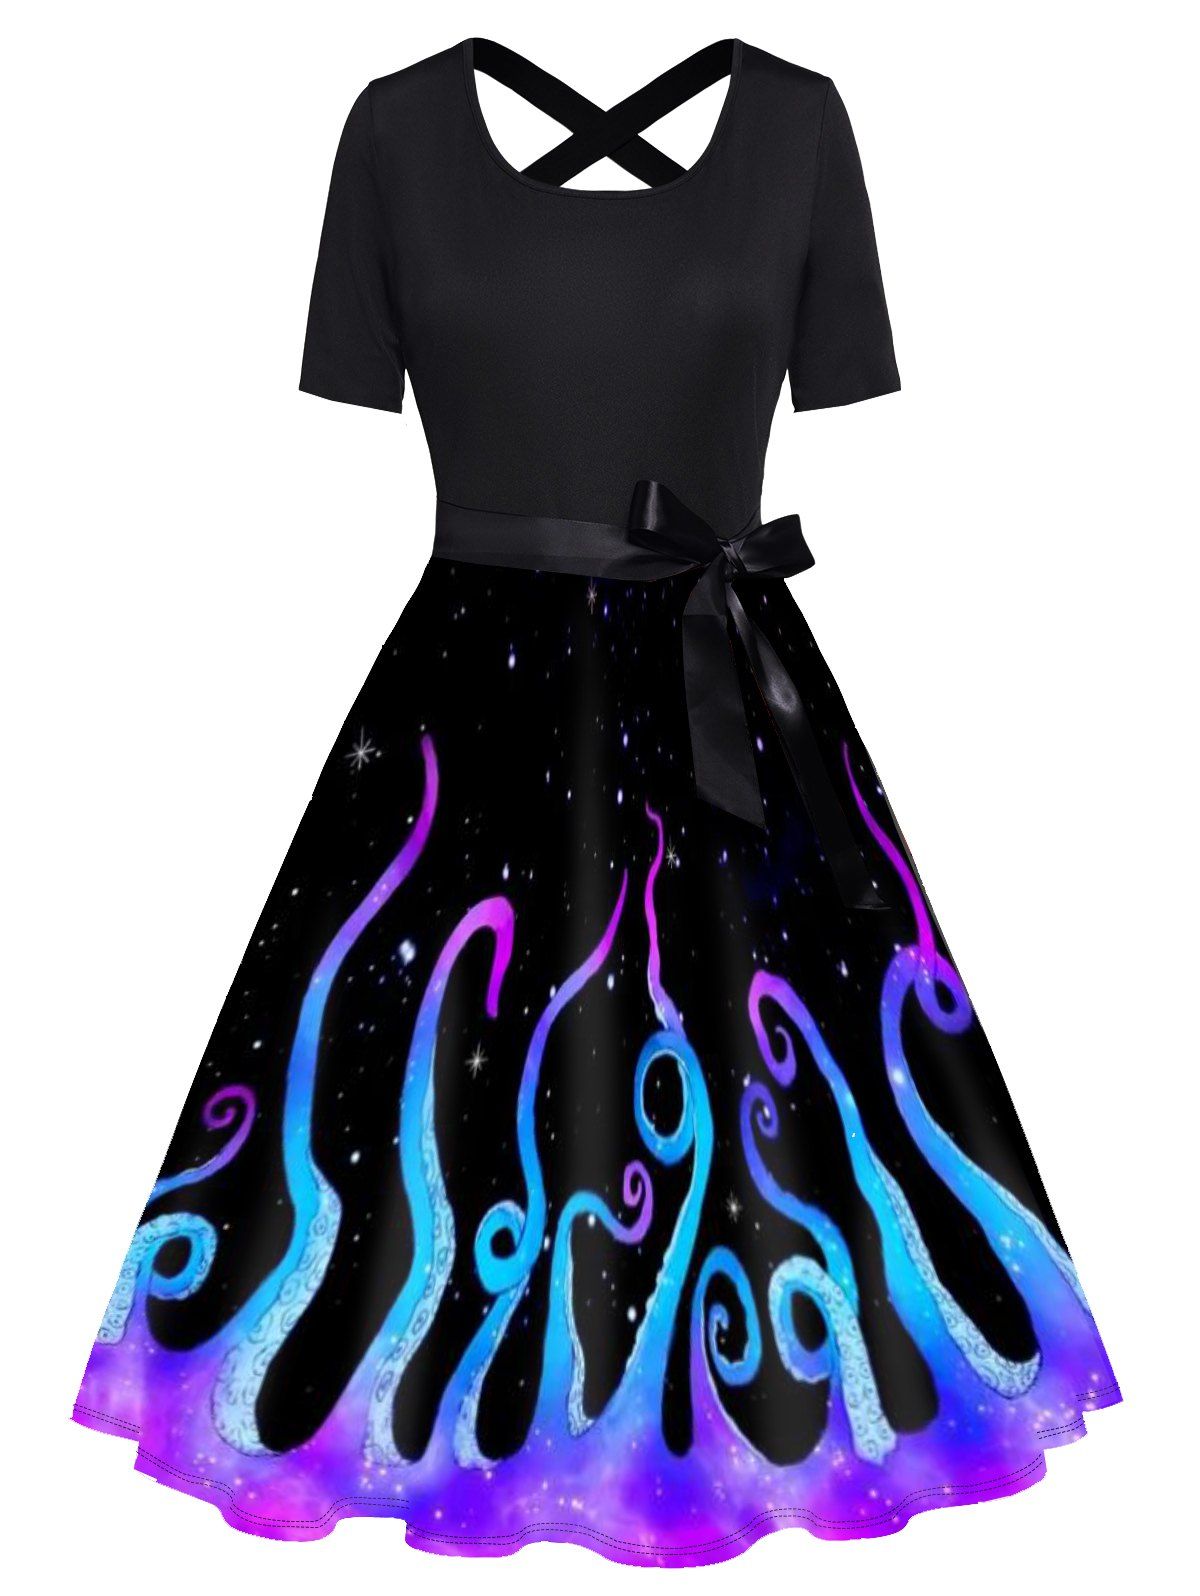 Galaxy Octopus Print Short Sleeve Dress Bowknot Cross High Waist A Line Dress - BLACK M